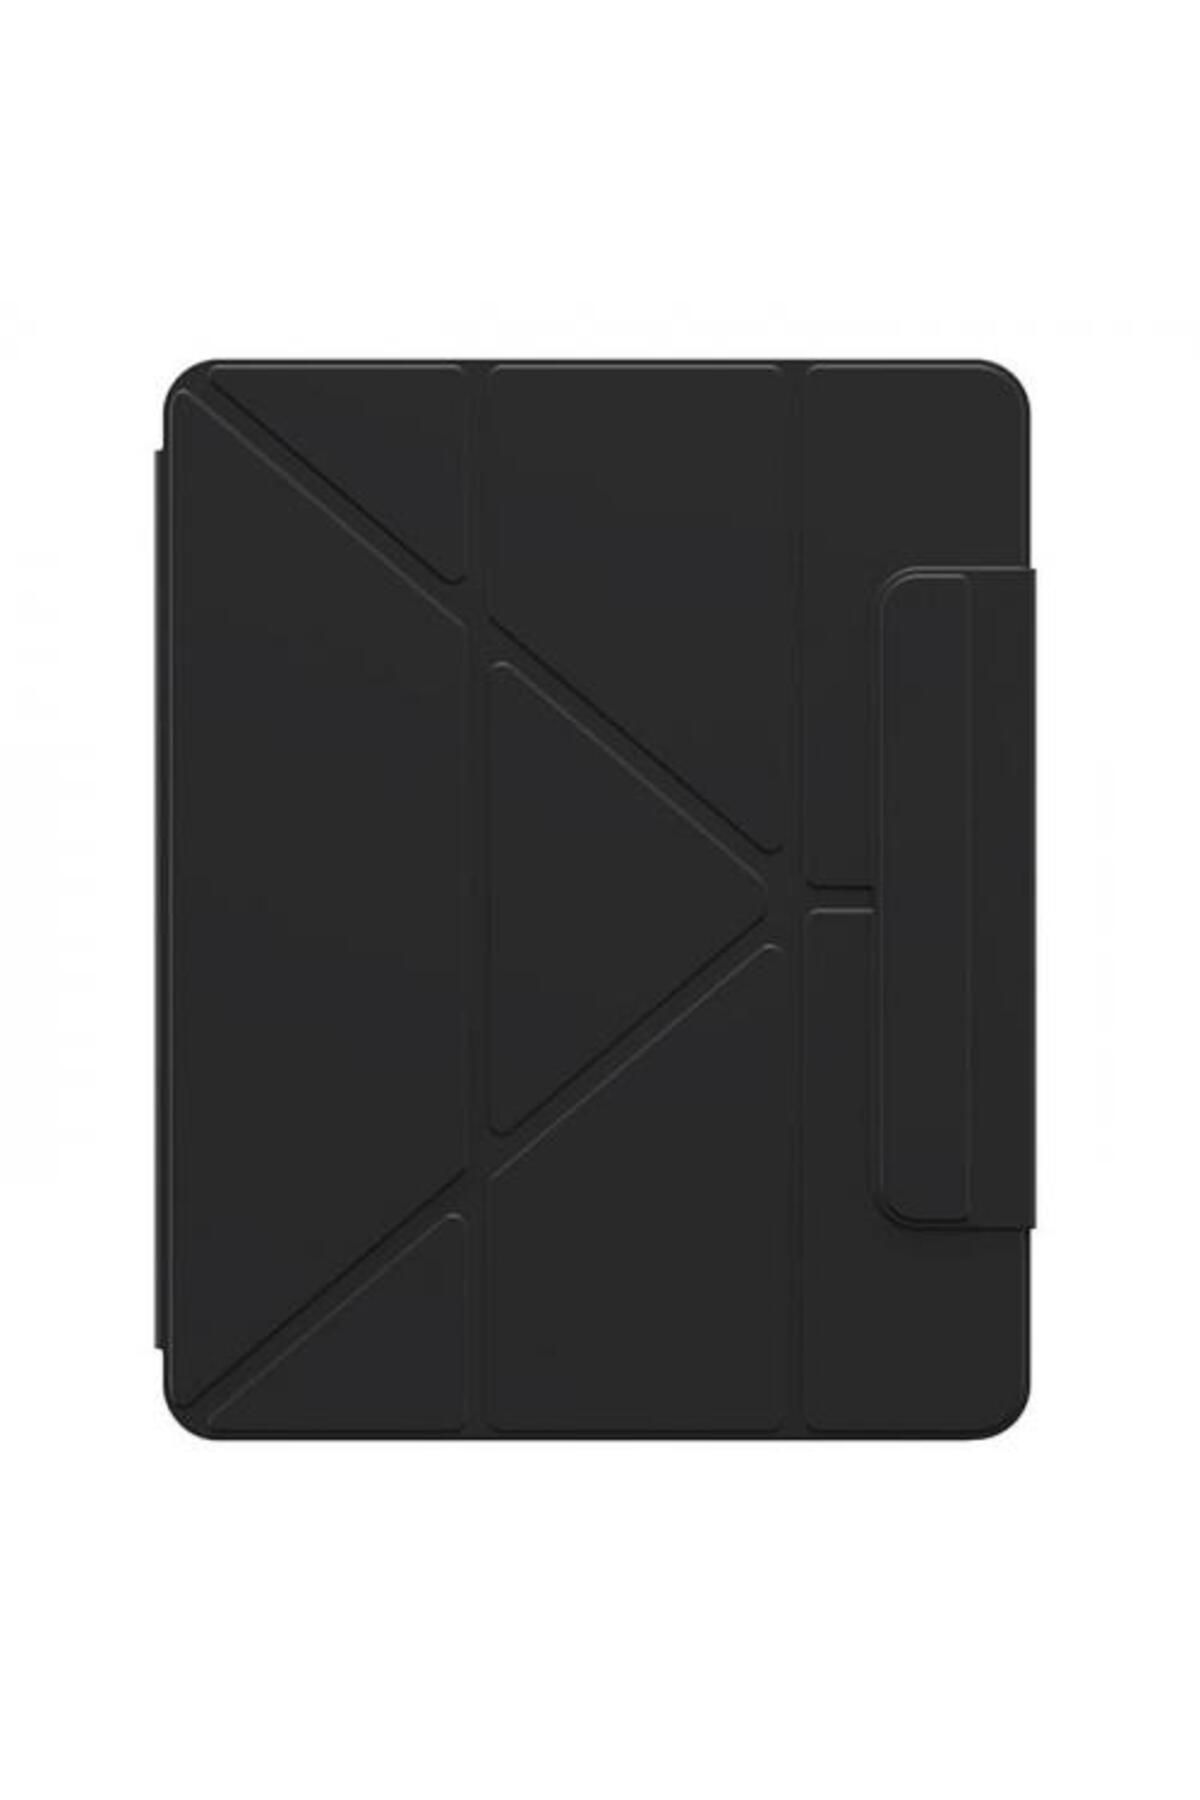 Baseus Apple Ipad Pro 11 Inch 2018-2020-2021 Uyumlu Tablet Kılıfı, Standlı, Manyetik, Kalem Yerli